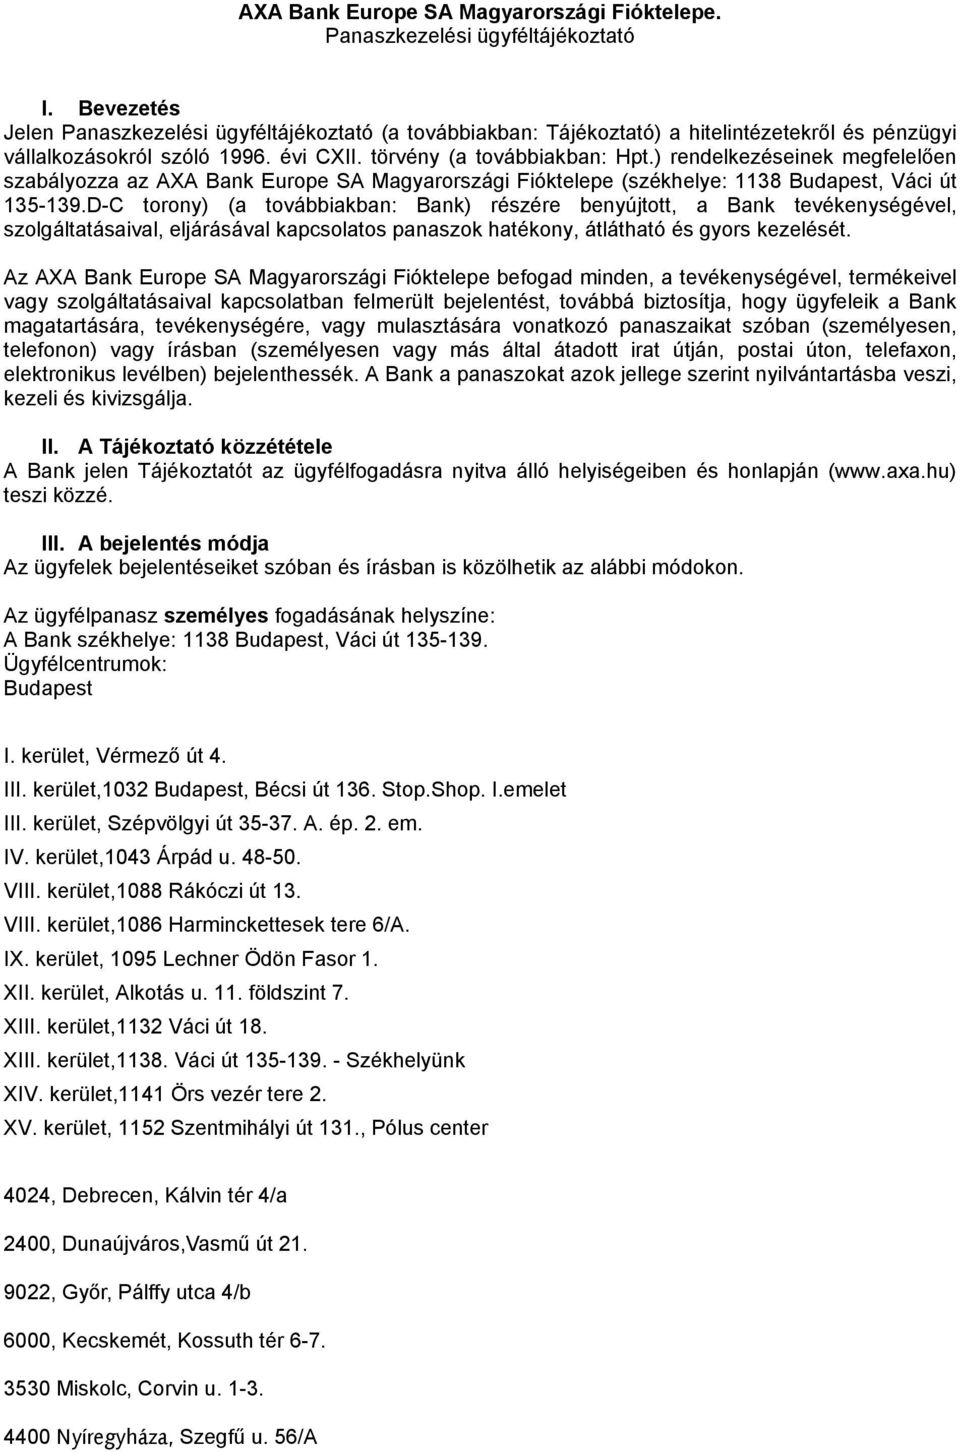 ) rendelkezéseinek megfelelően szabályozza az AXA Bank Europe SA Magyarországi Fióktelepe (székhelye: 1138 Budapest, Váci út 135-139.